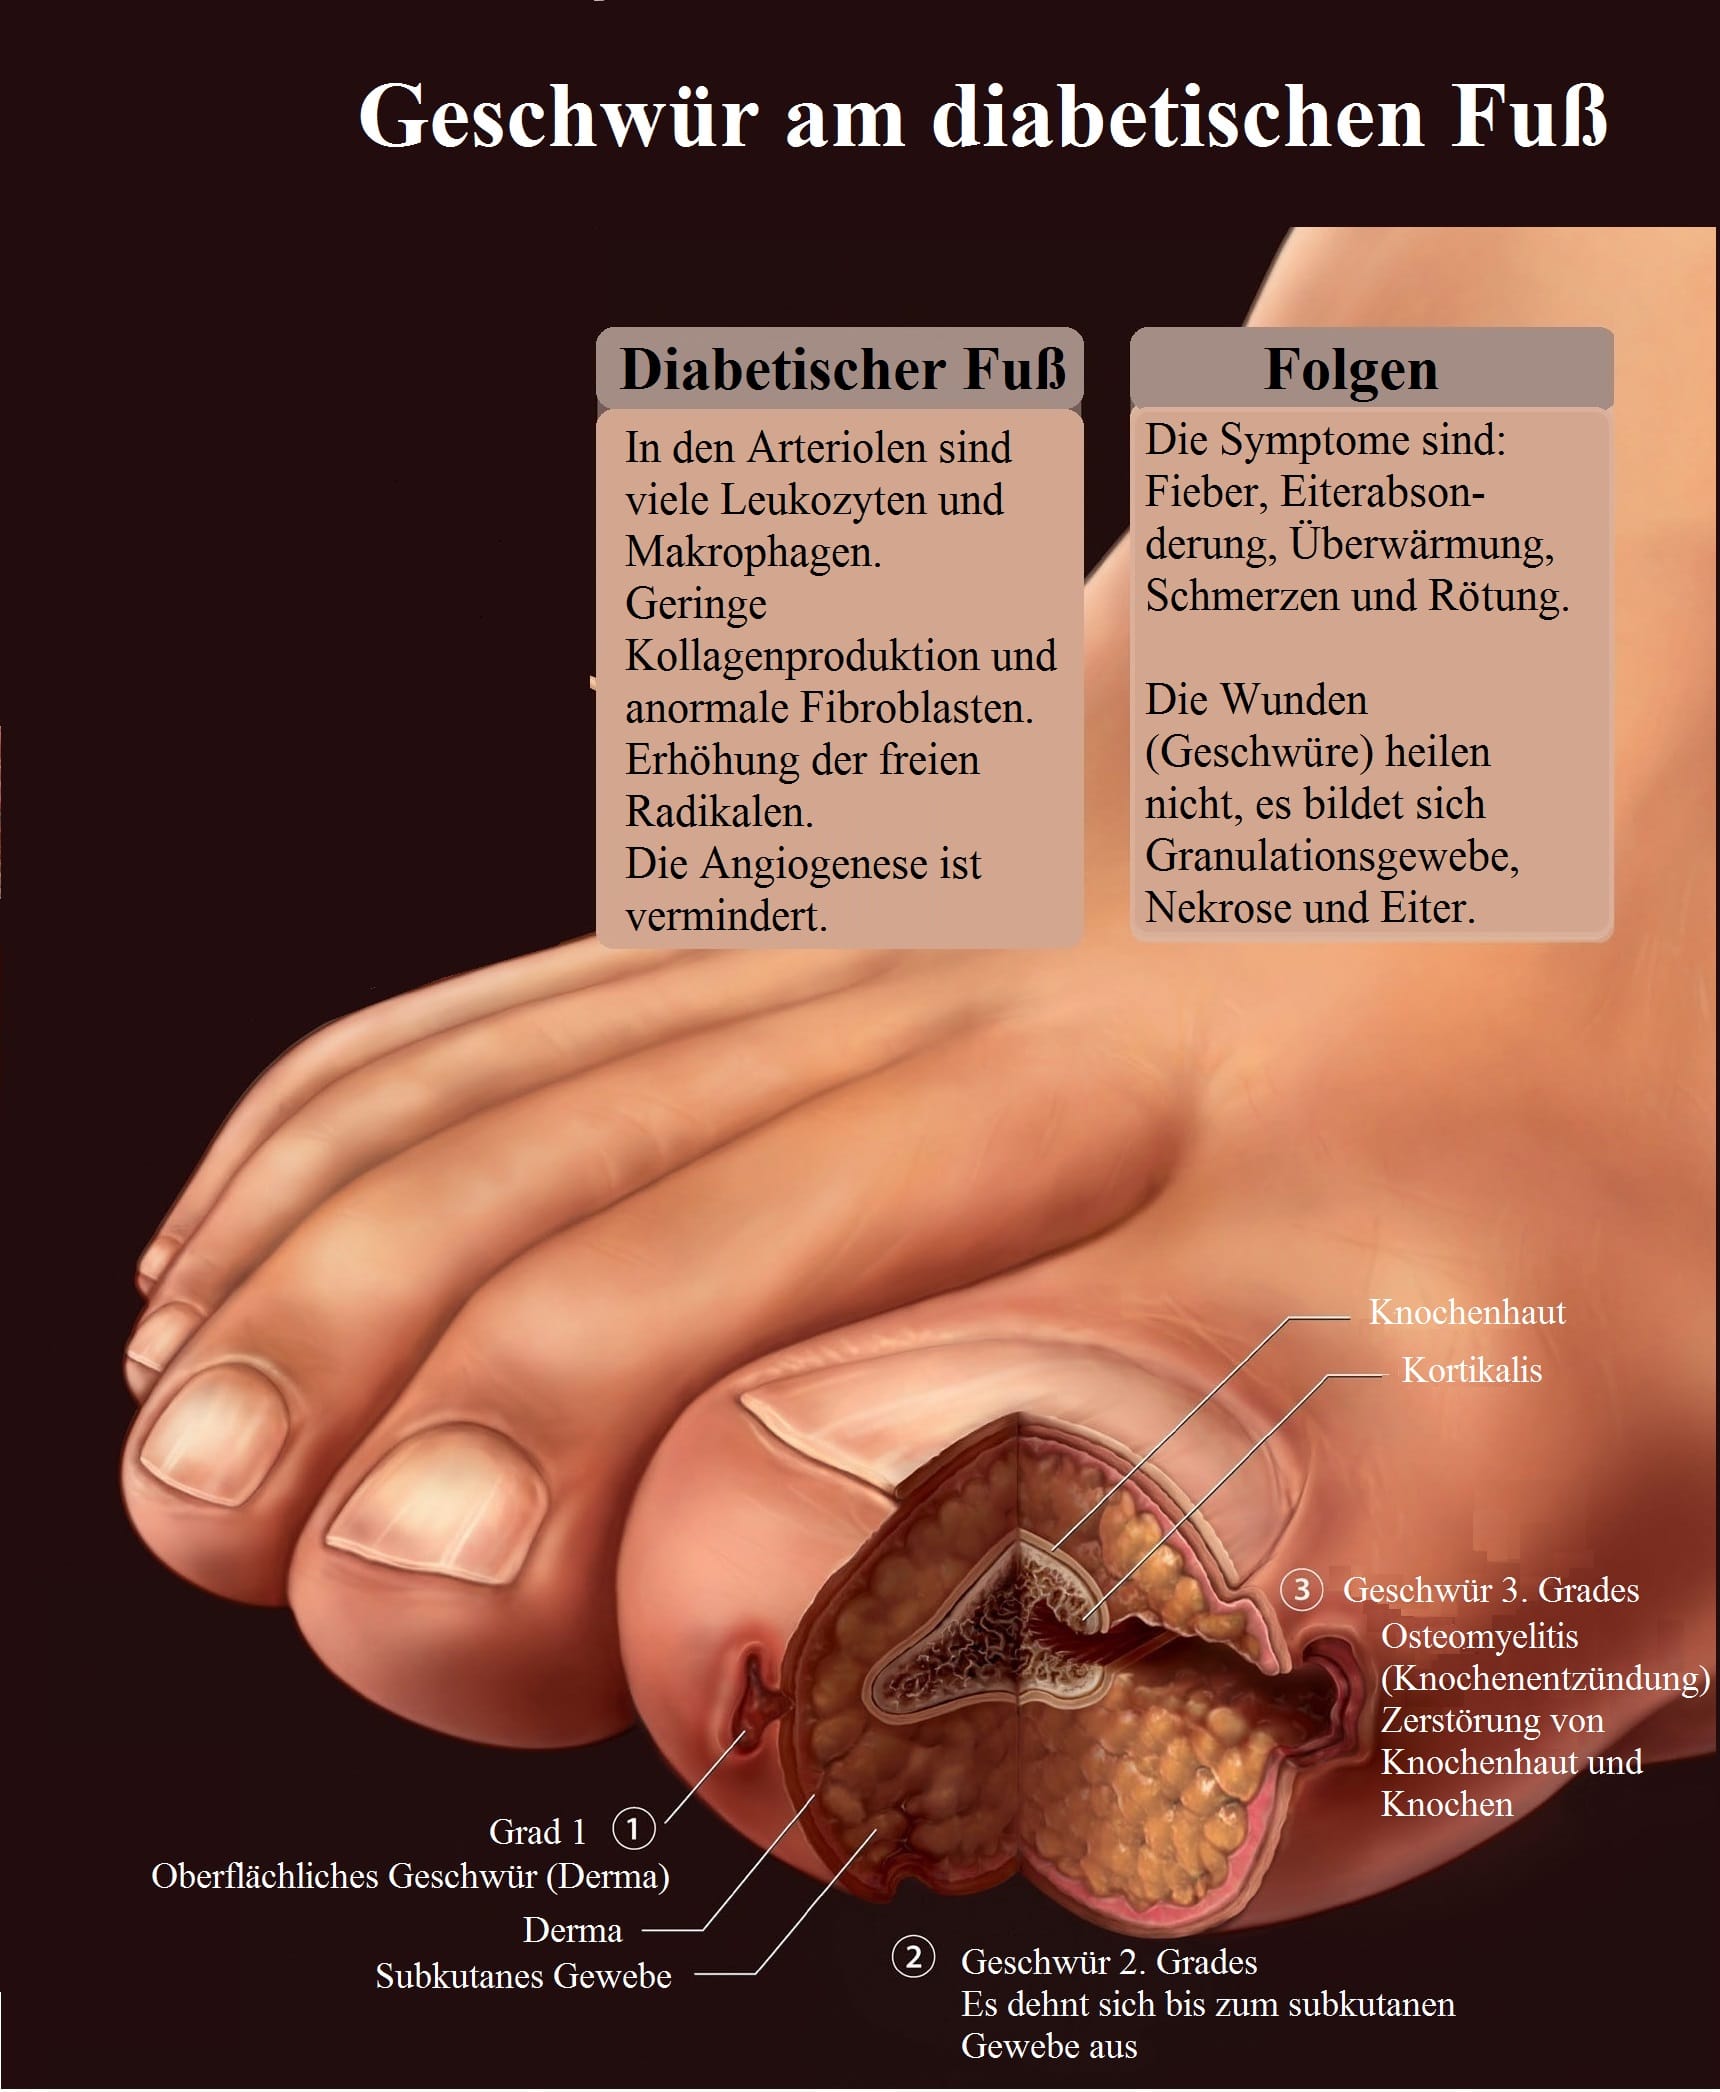 Geschwür, Diabetischer Fuß, Folgen